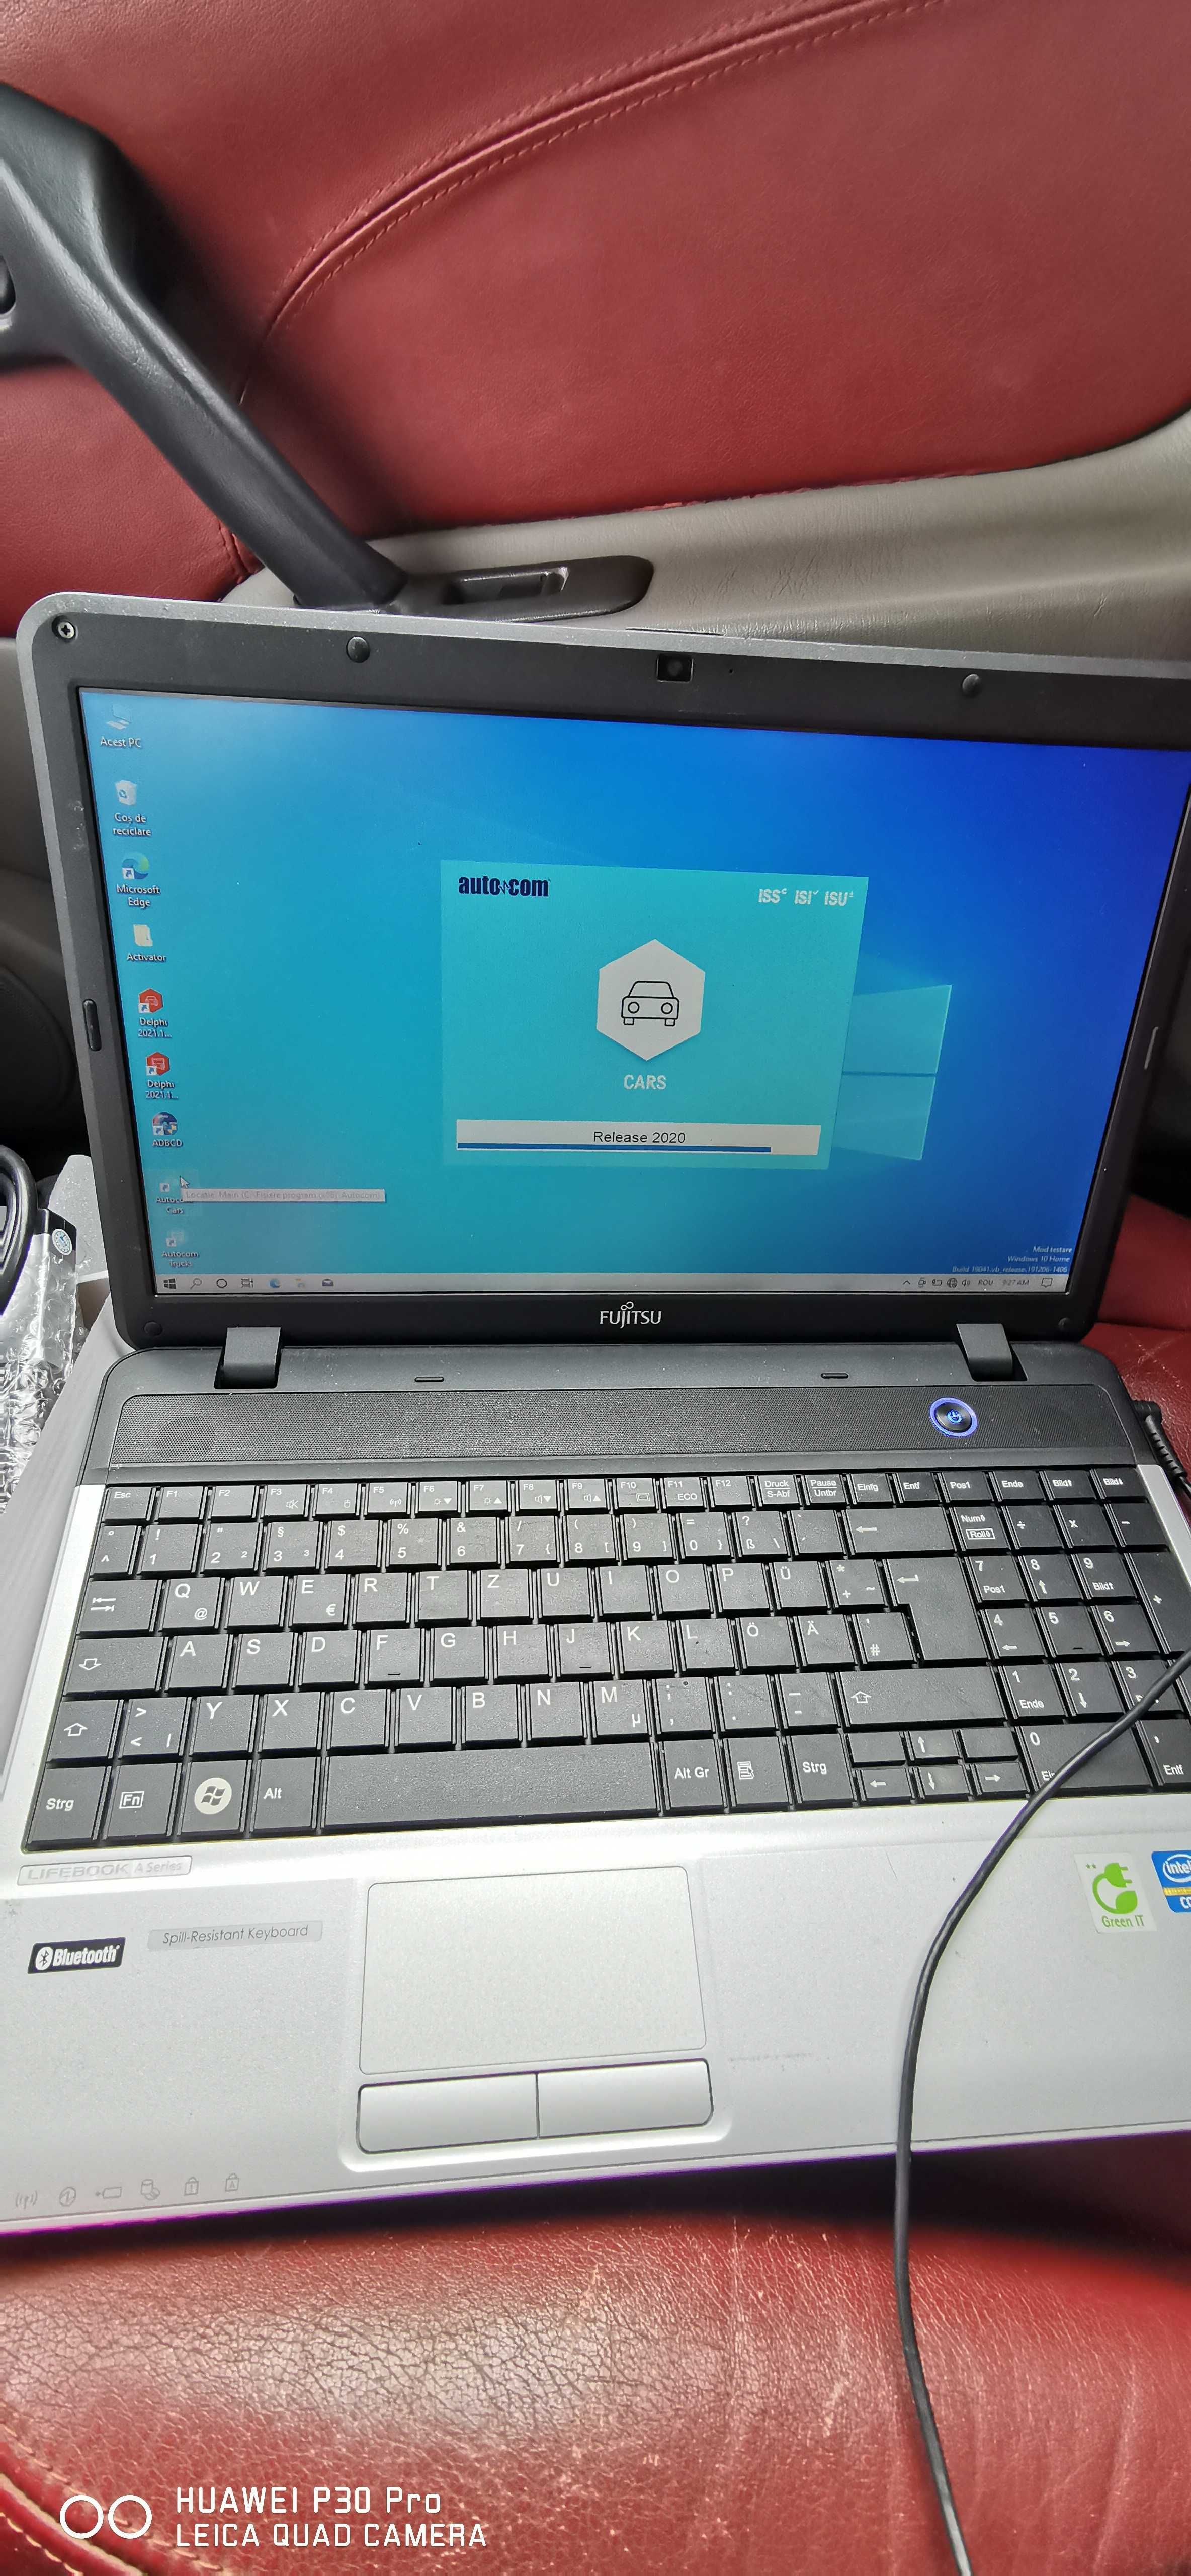 Laptop Fujitsu cu tester Auto pentru toate autoturismele și camioanele